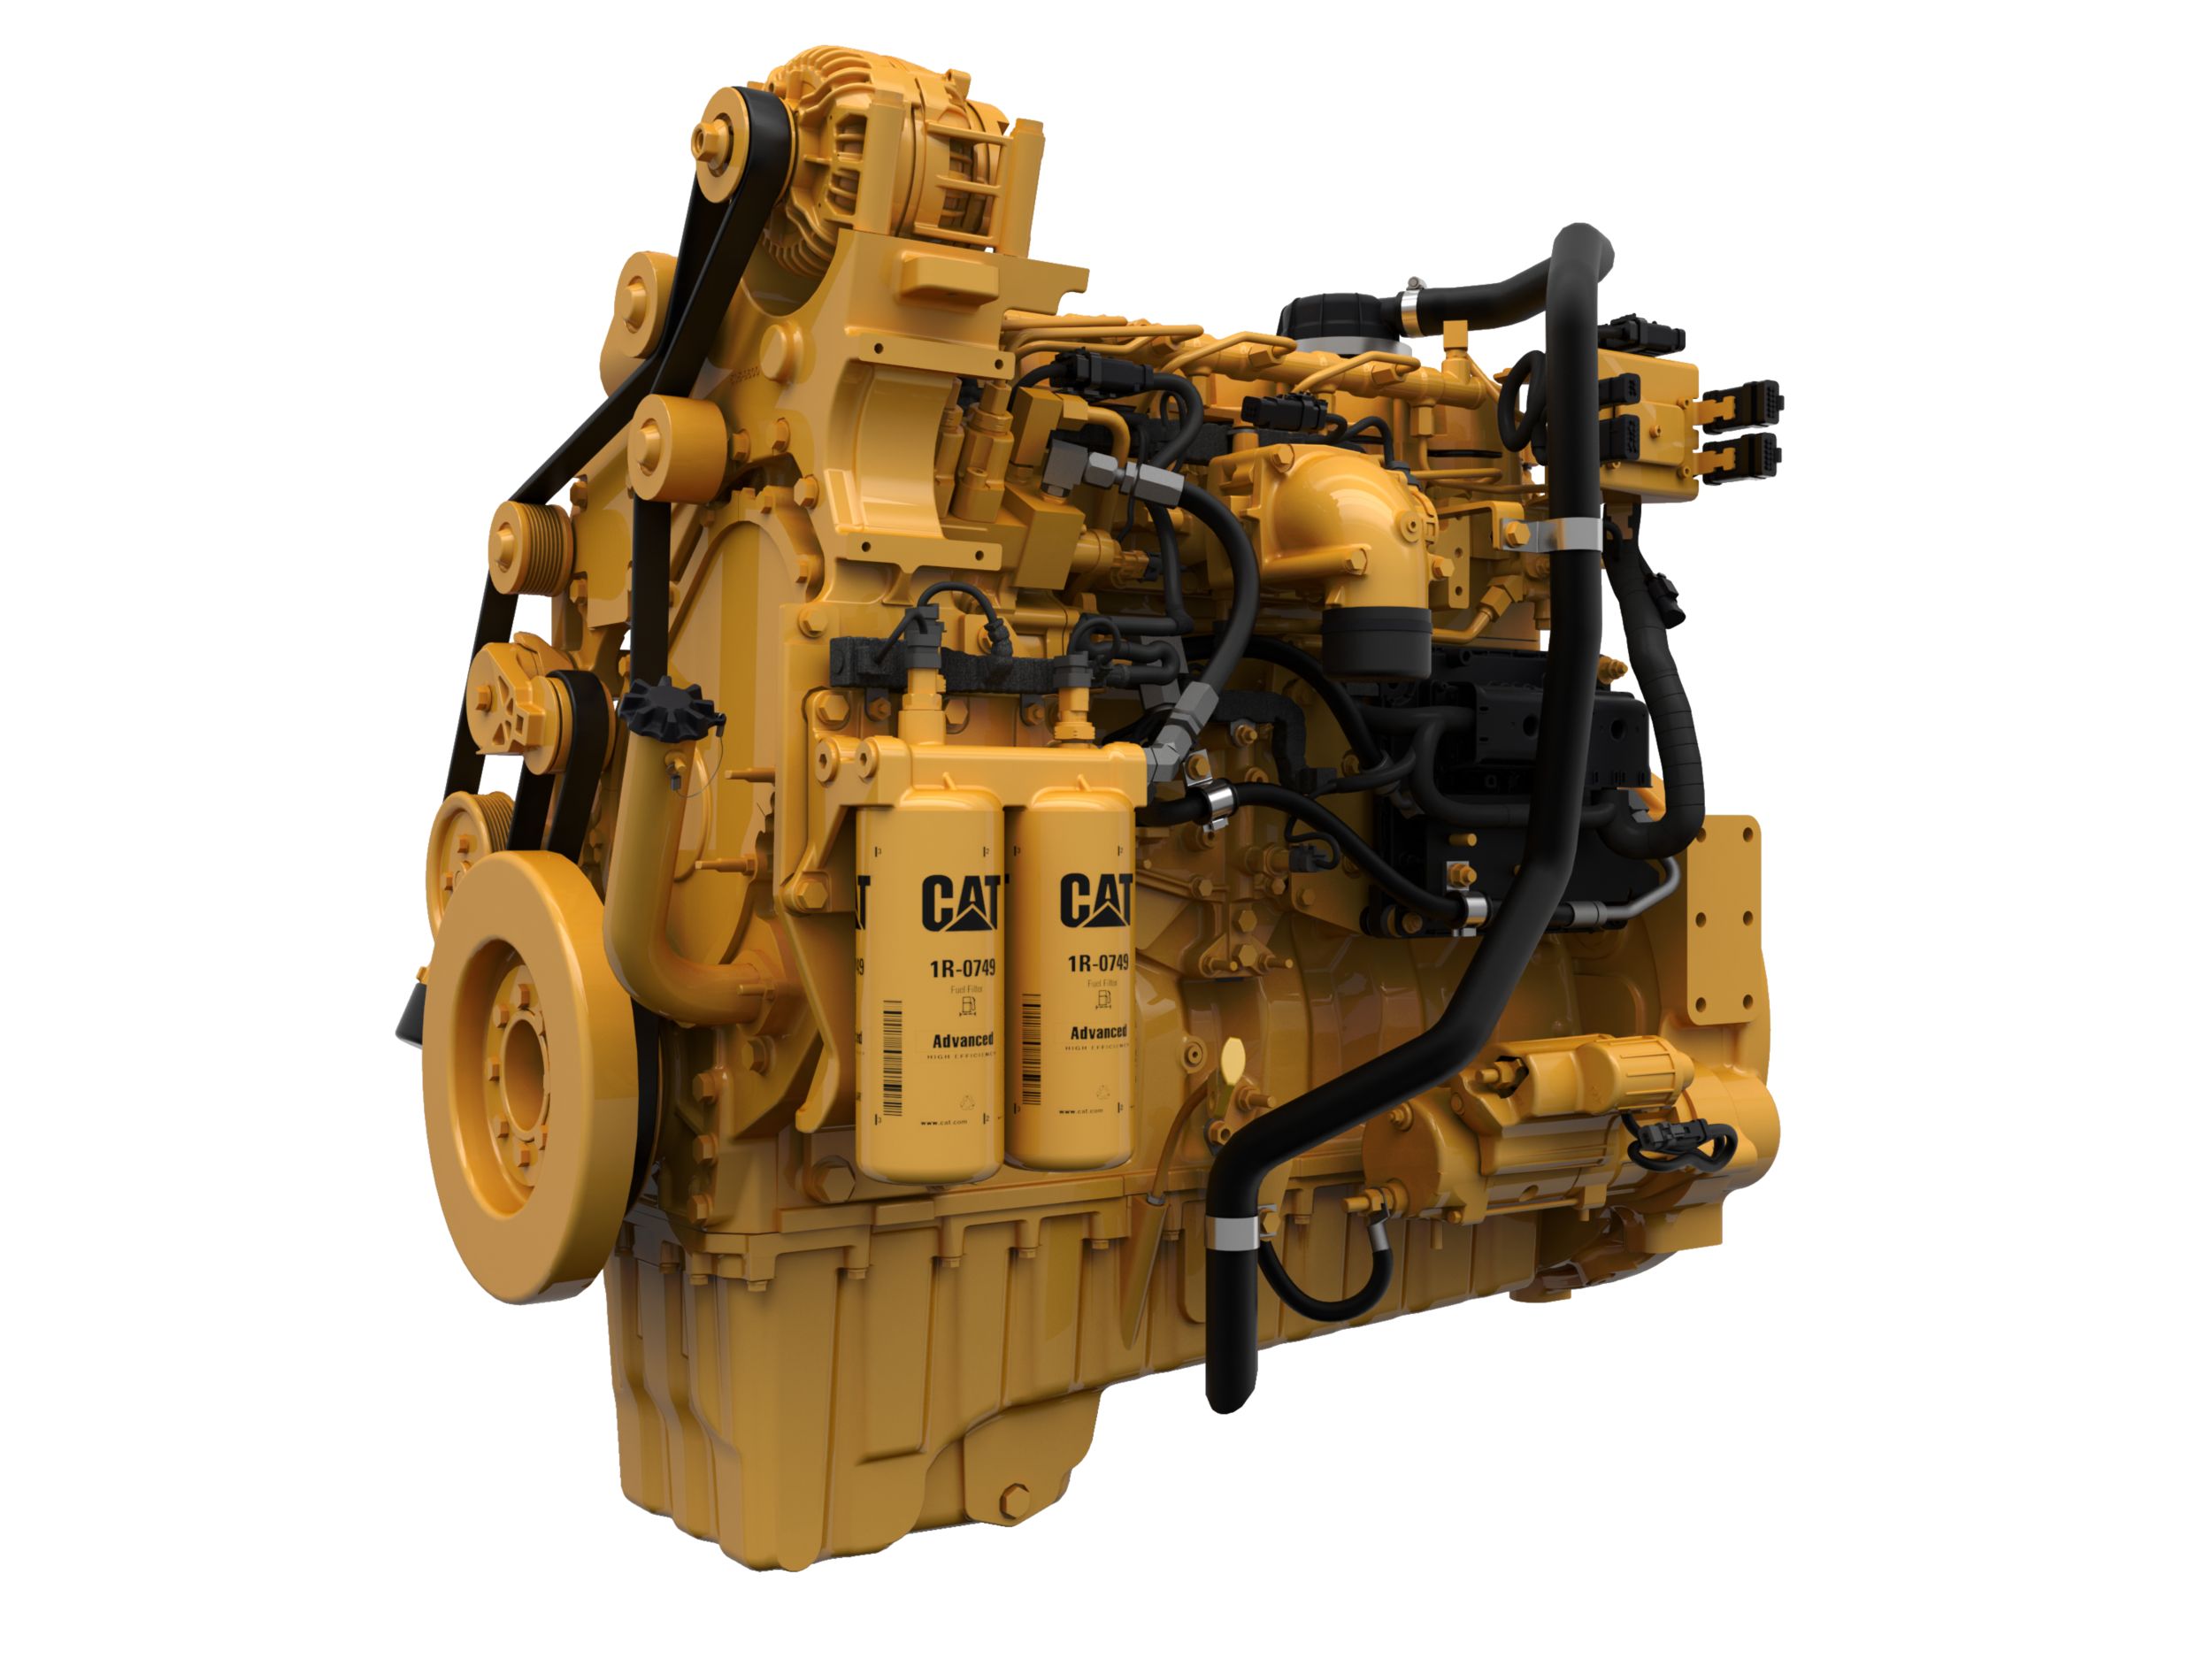 Cat® C9.3B Diesel Engine